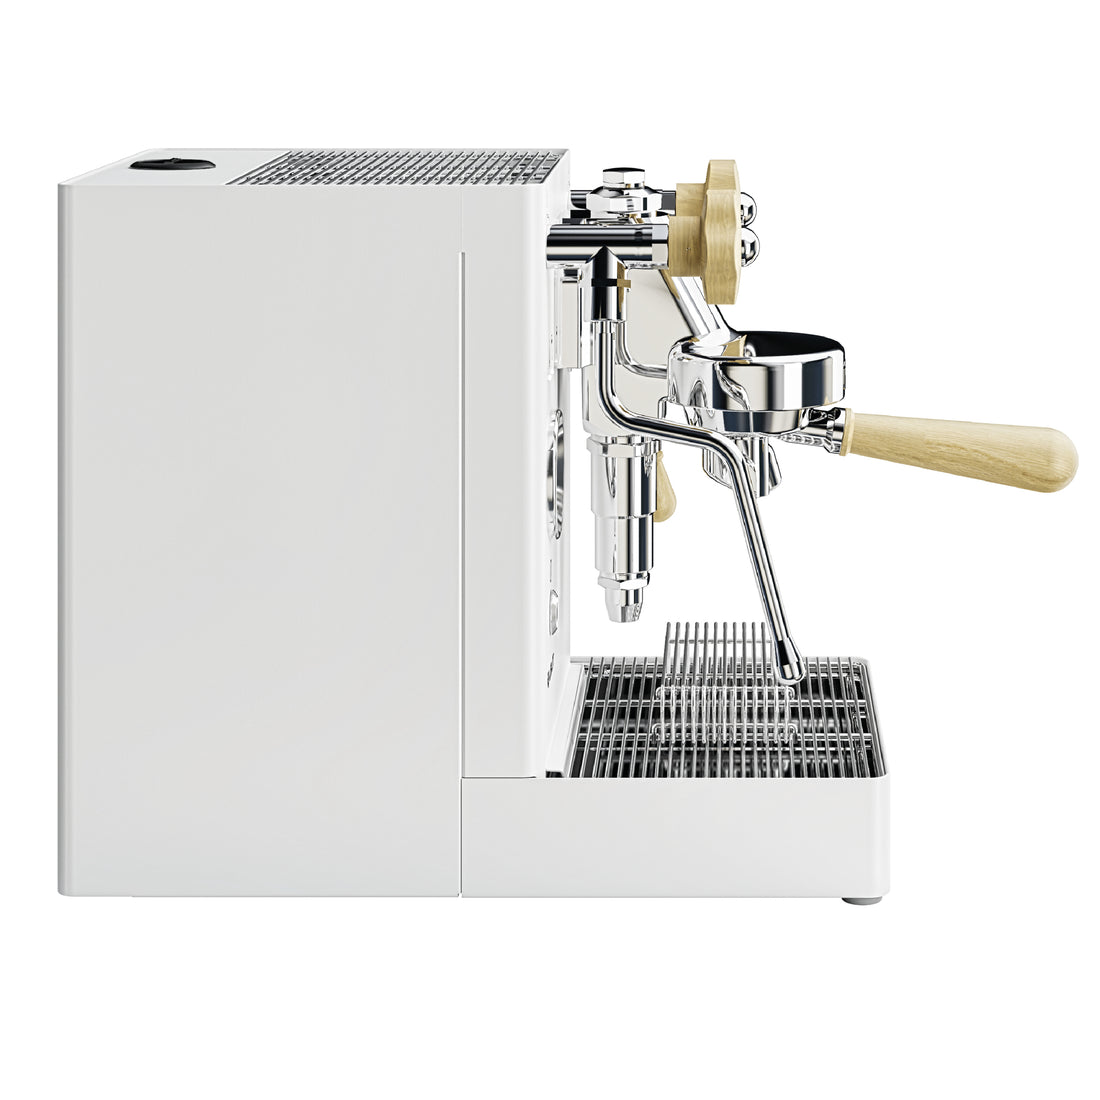 Lelit Mara X Heat Exchanger Espresso Machine - Matte White